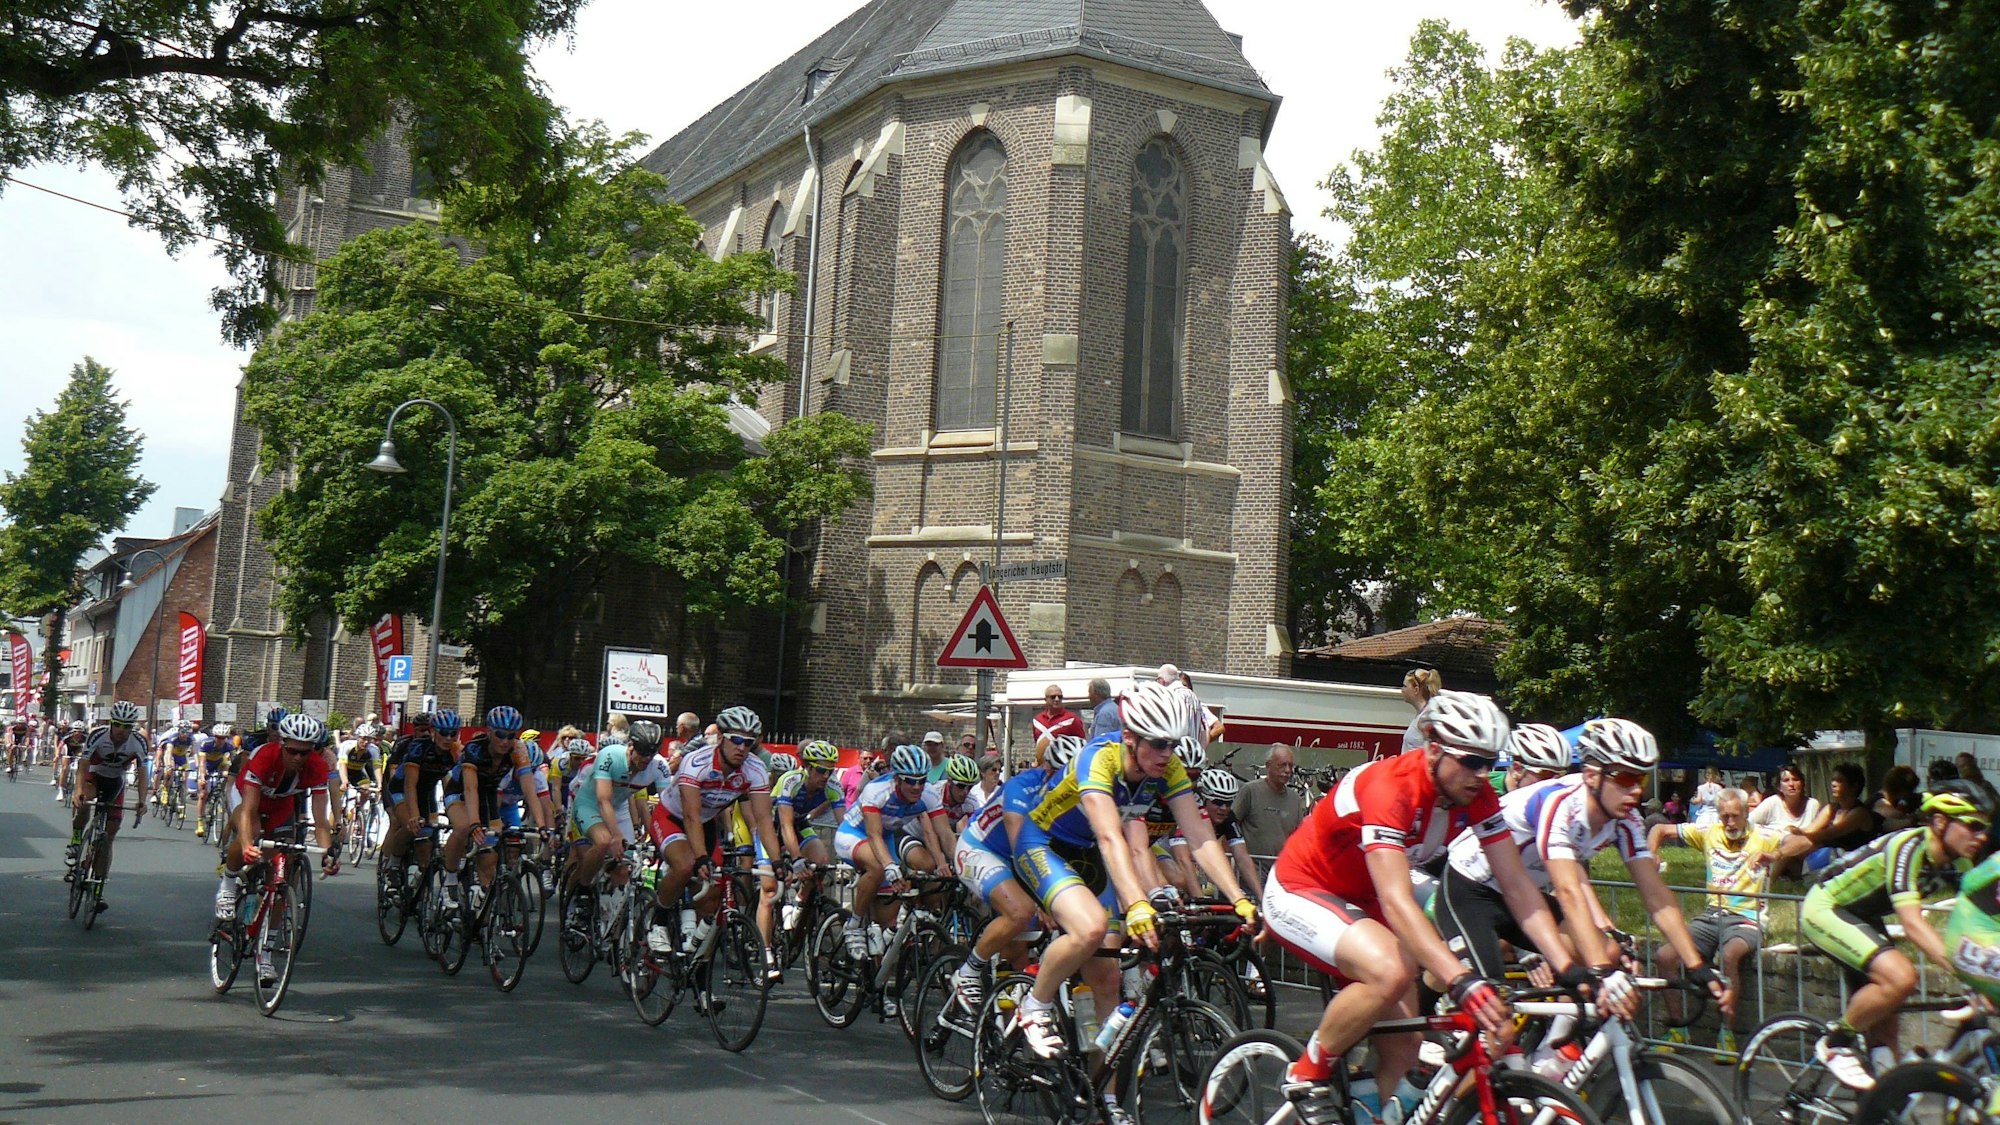 Rennradfahrer fahren im Pulk, im Hintergrund ist eine Kirche zu sehen.